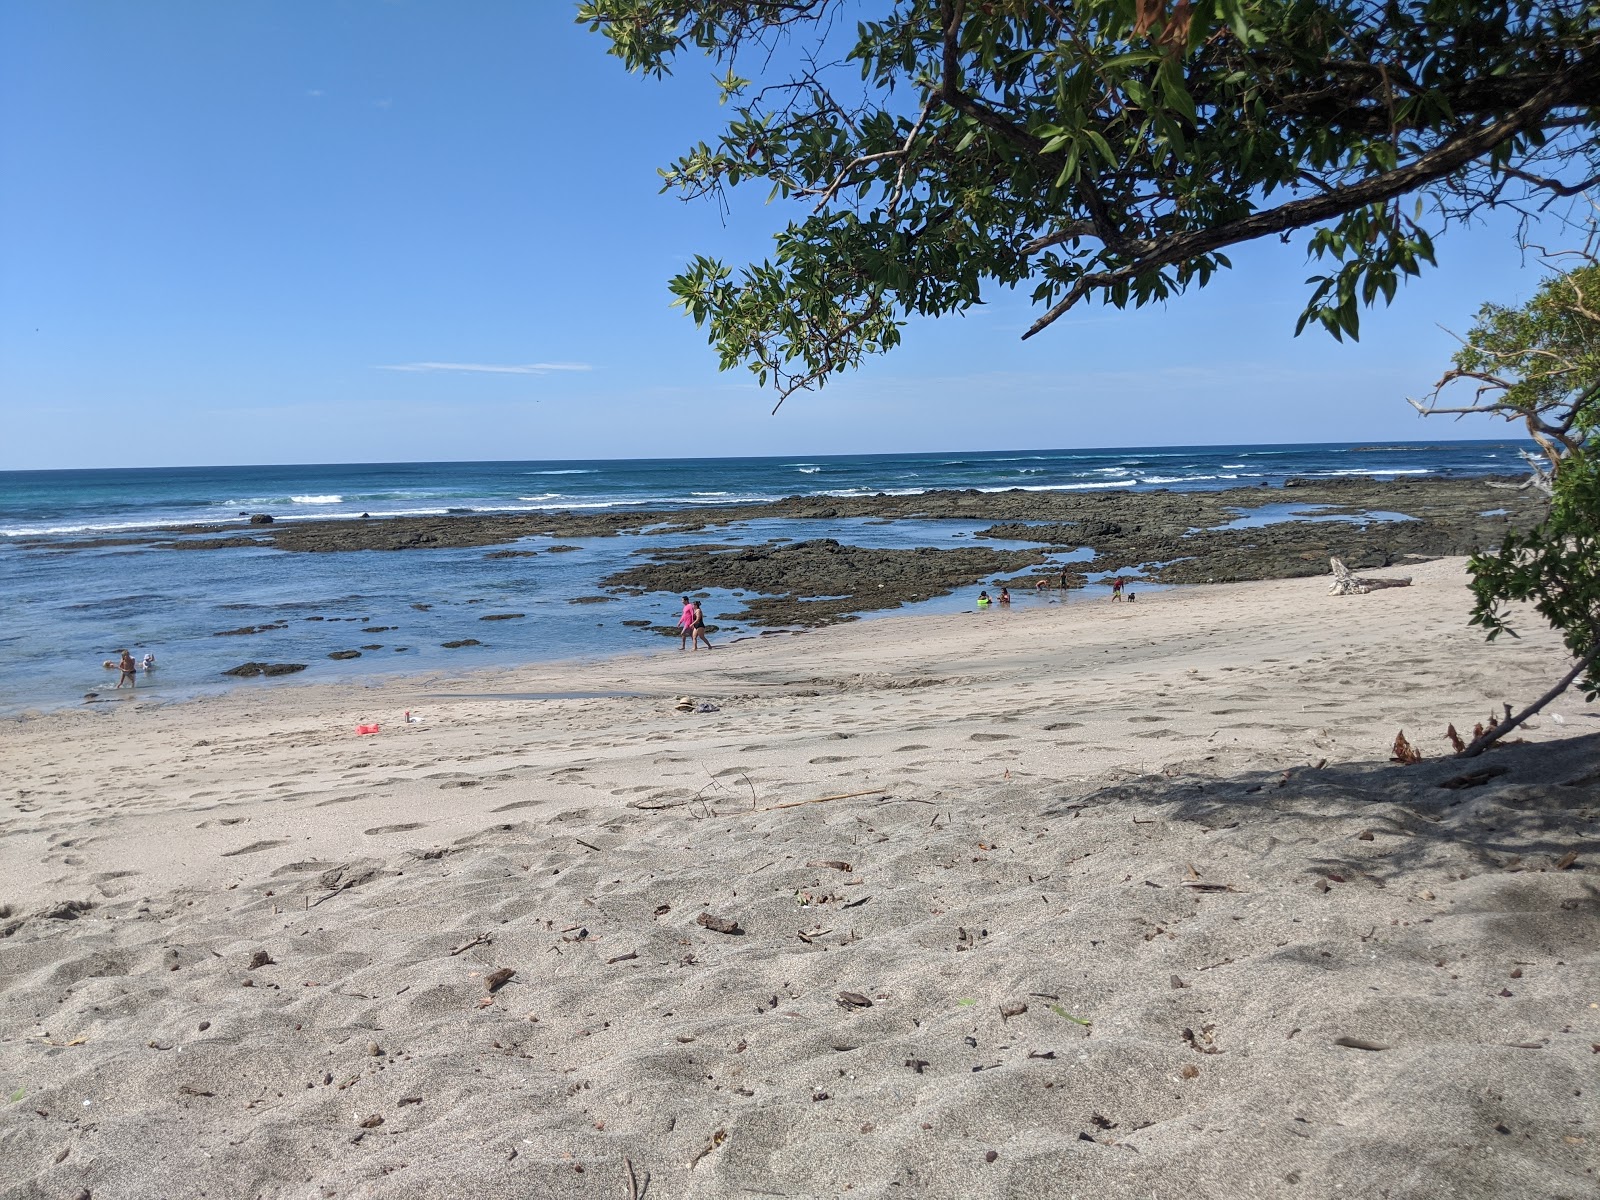 Zdjęcie Playa Blanca - popularne miejsce wśród znawców relaksu